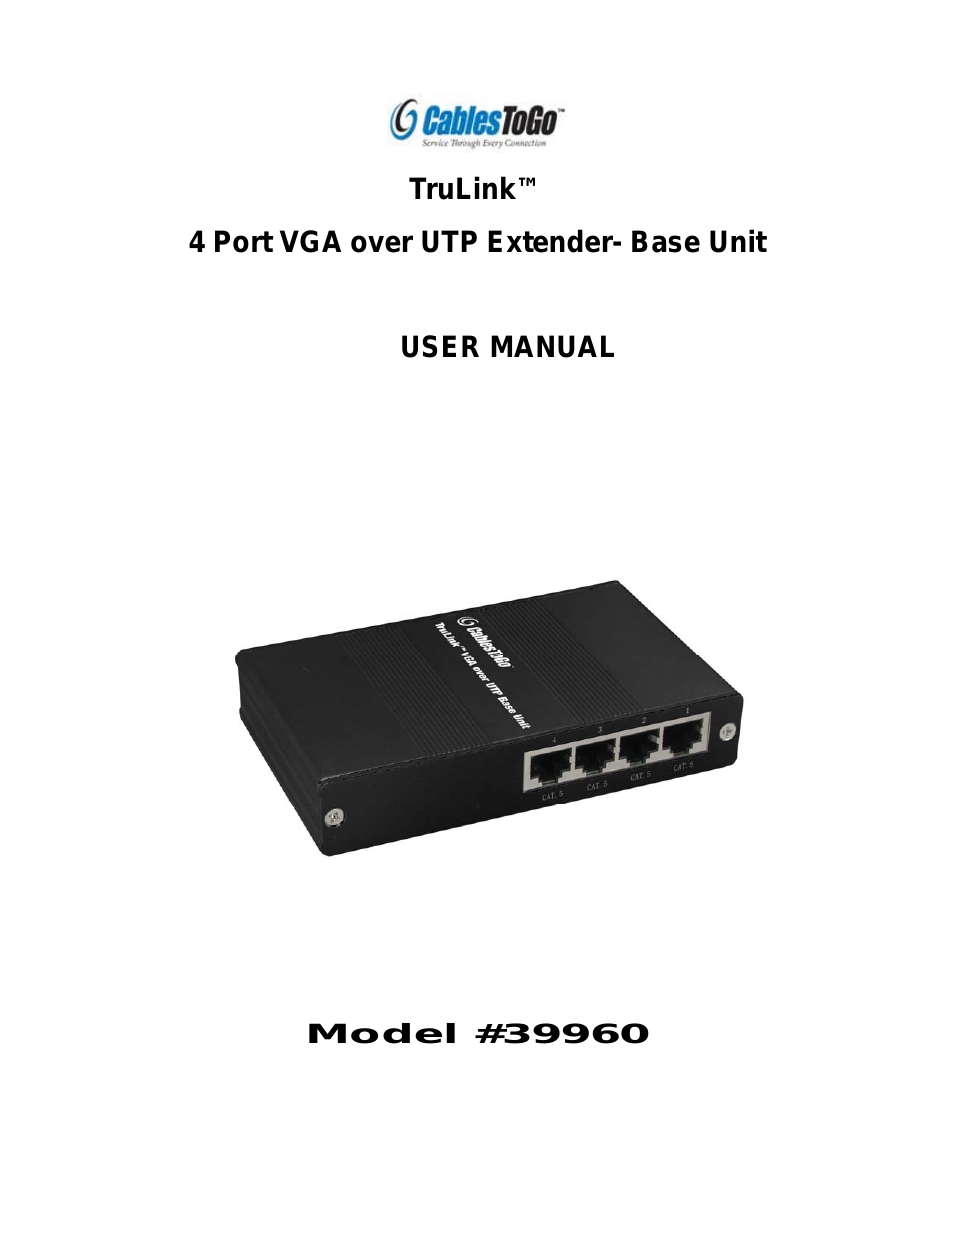 39960 4 Port VGA over UTP Extender- Base Unit